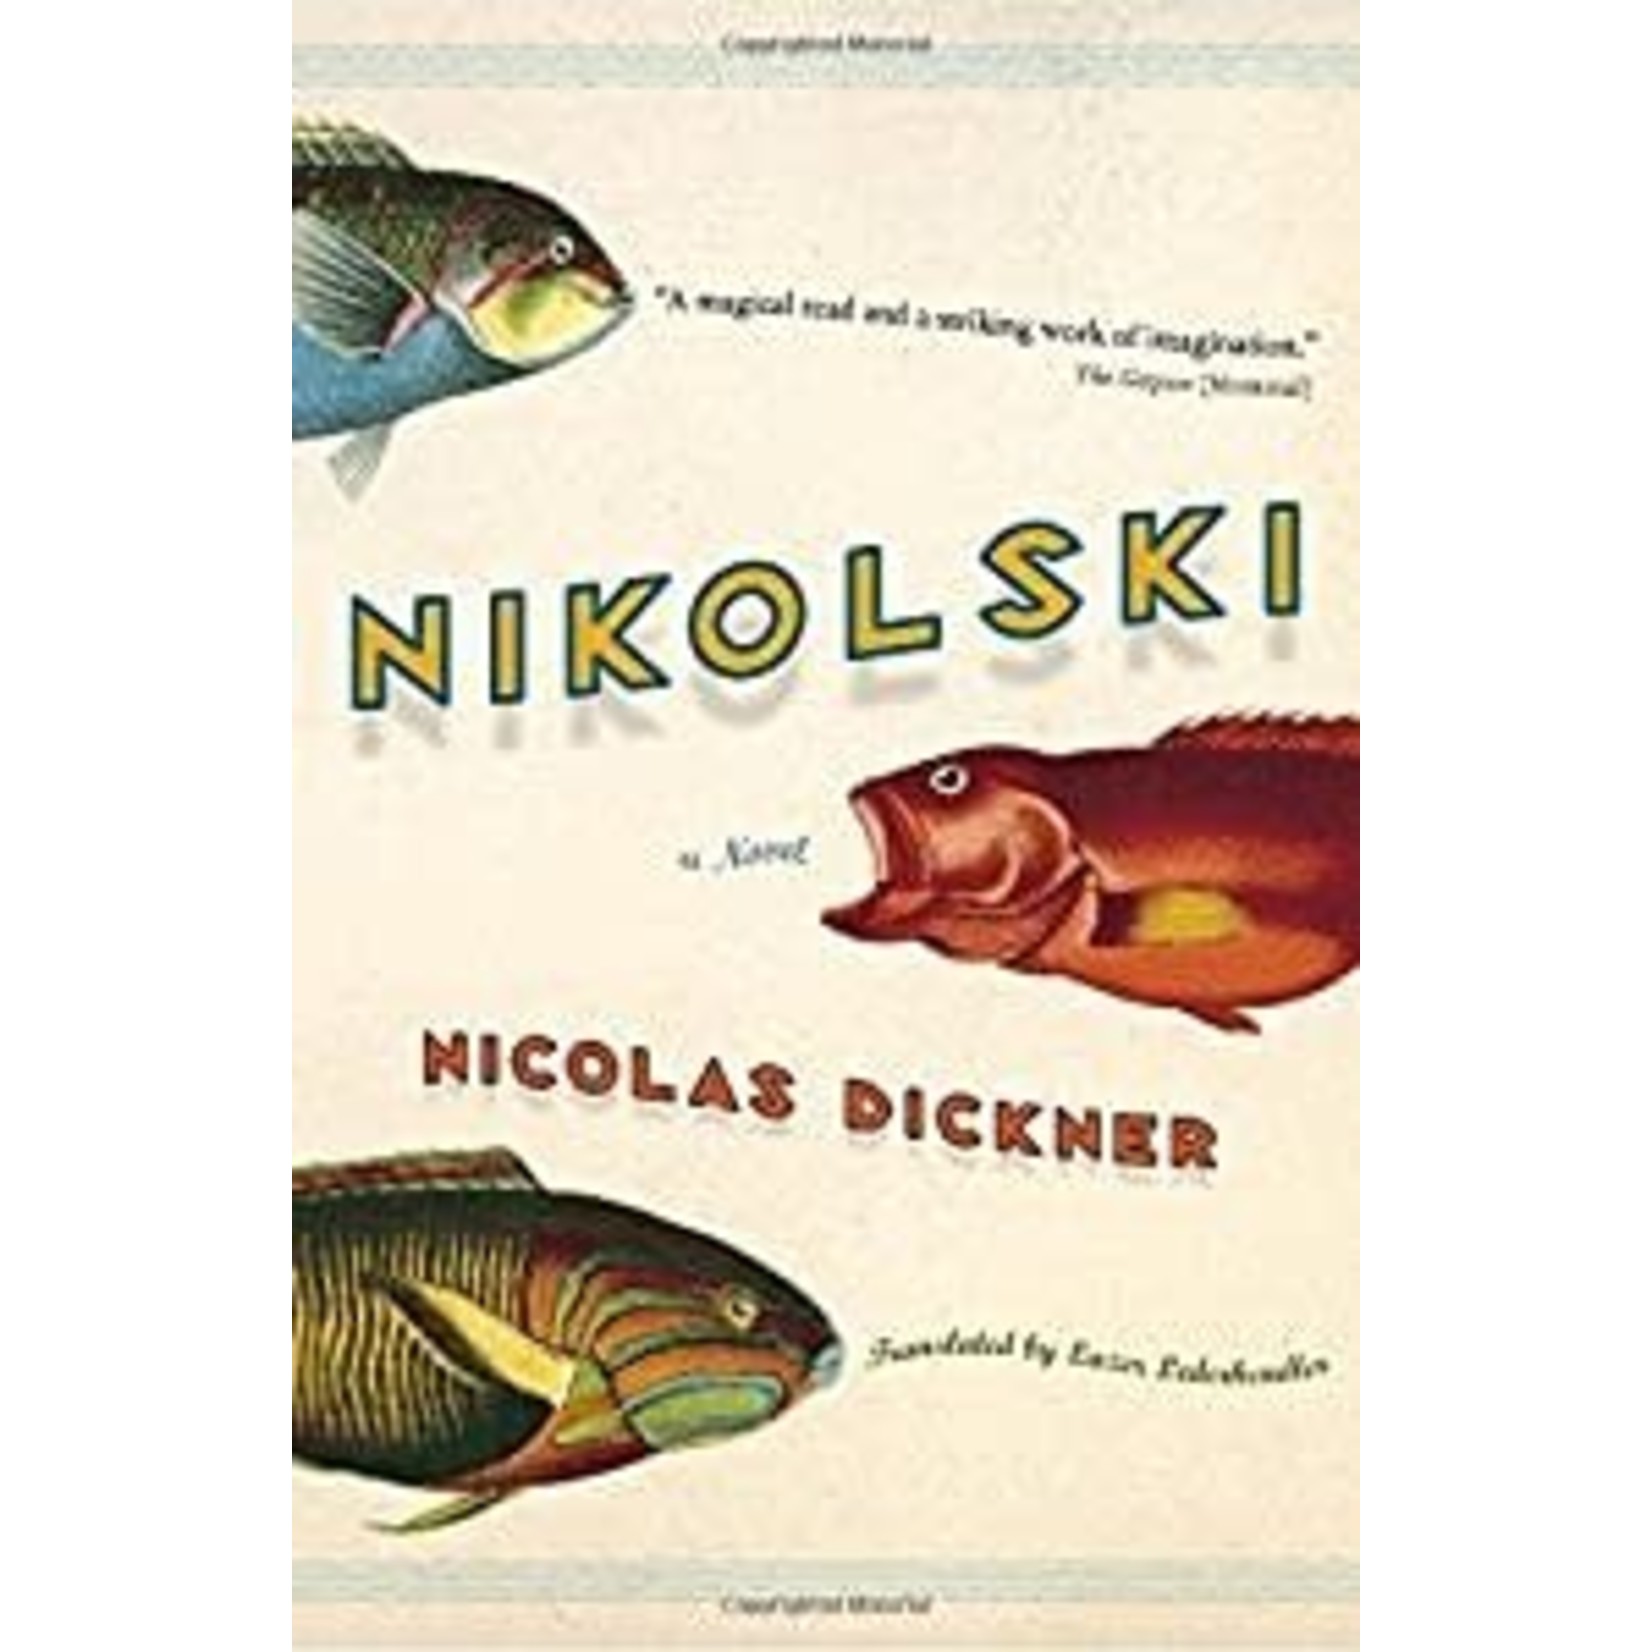 Dickner, Nicolas Dickner, Nicolas - Nikolski